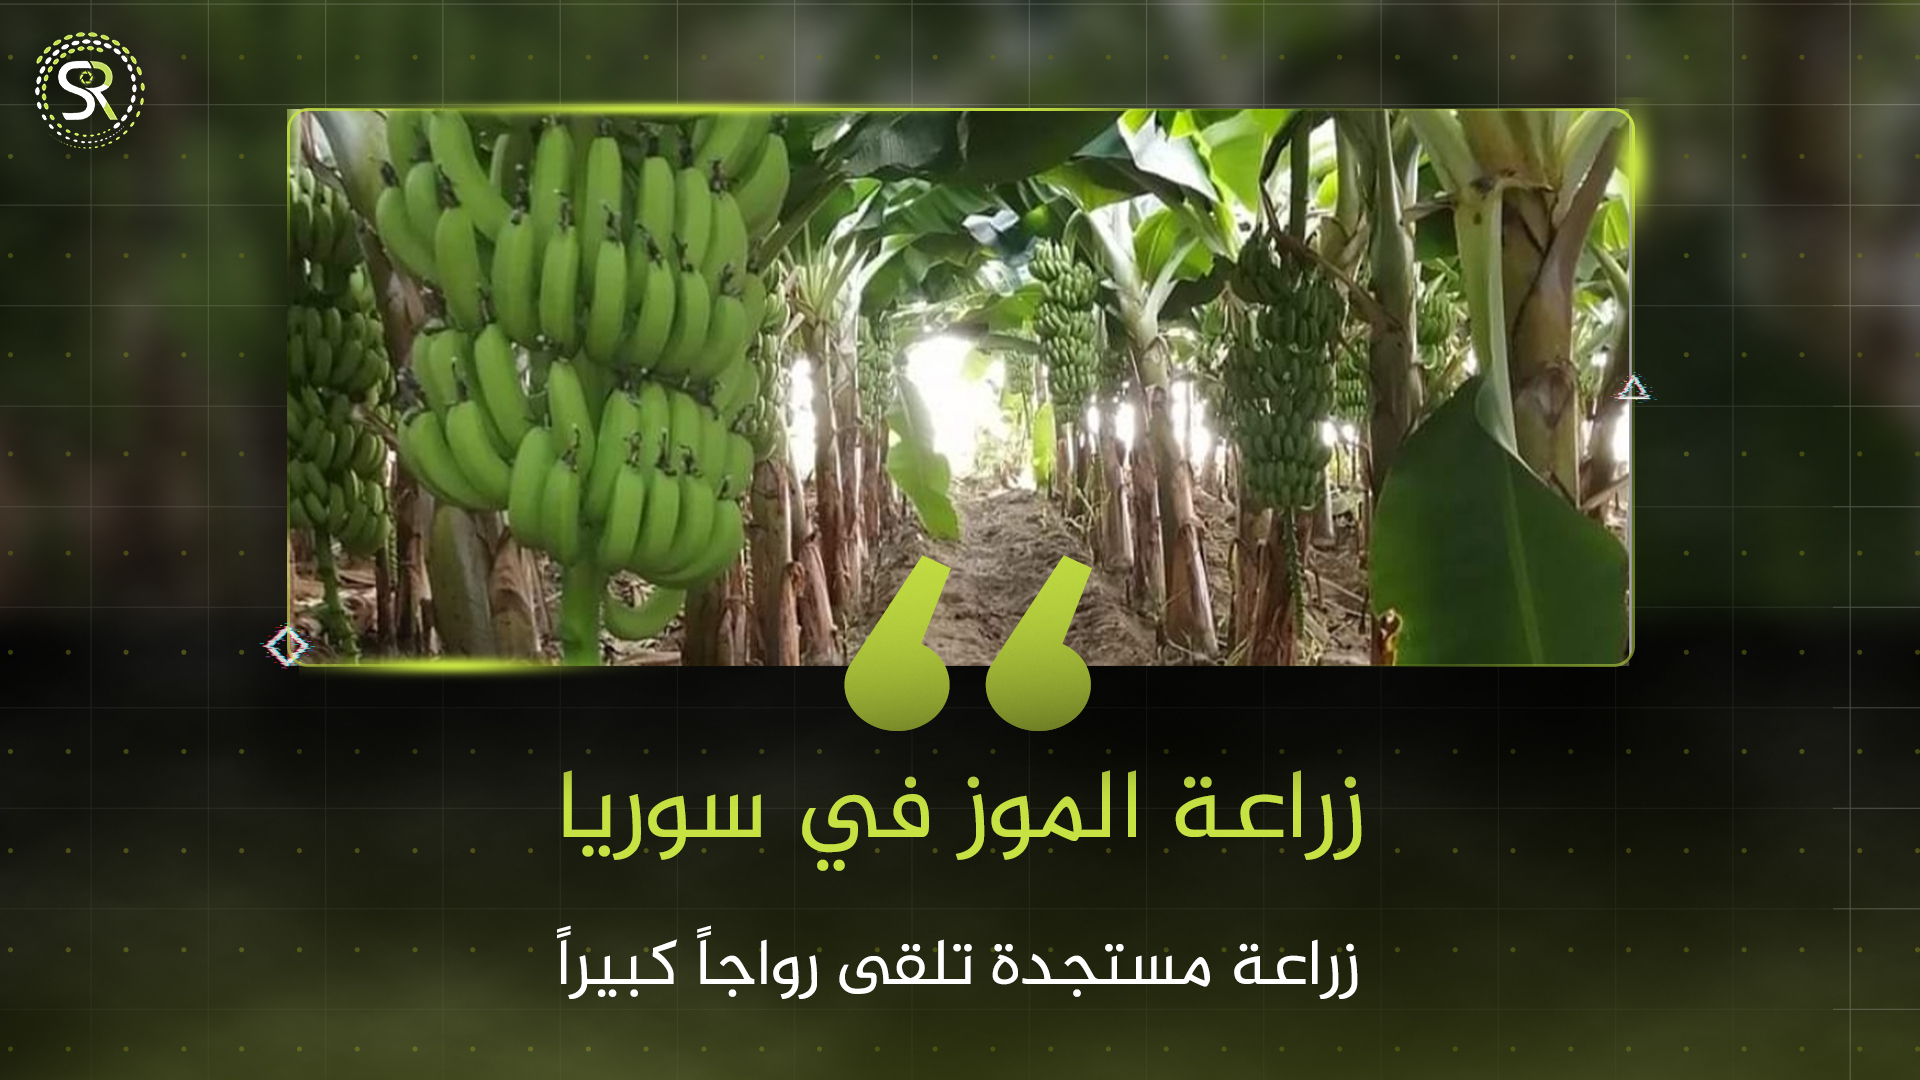 زراعة الموز في الساحل السوري.. محصول جديد ينافس الزراعات التقليدية